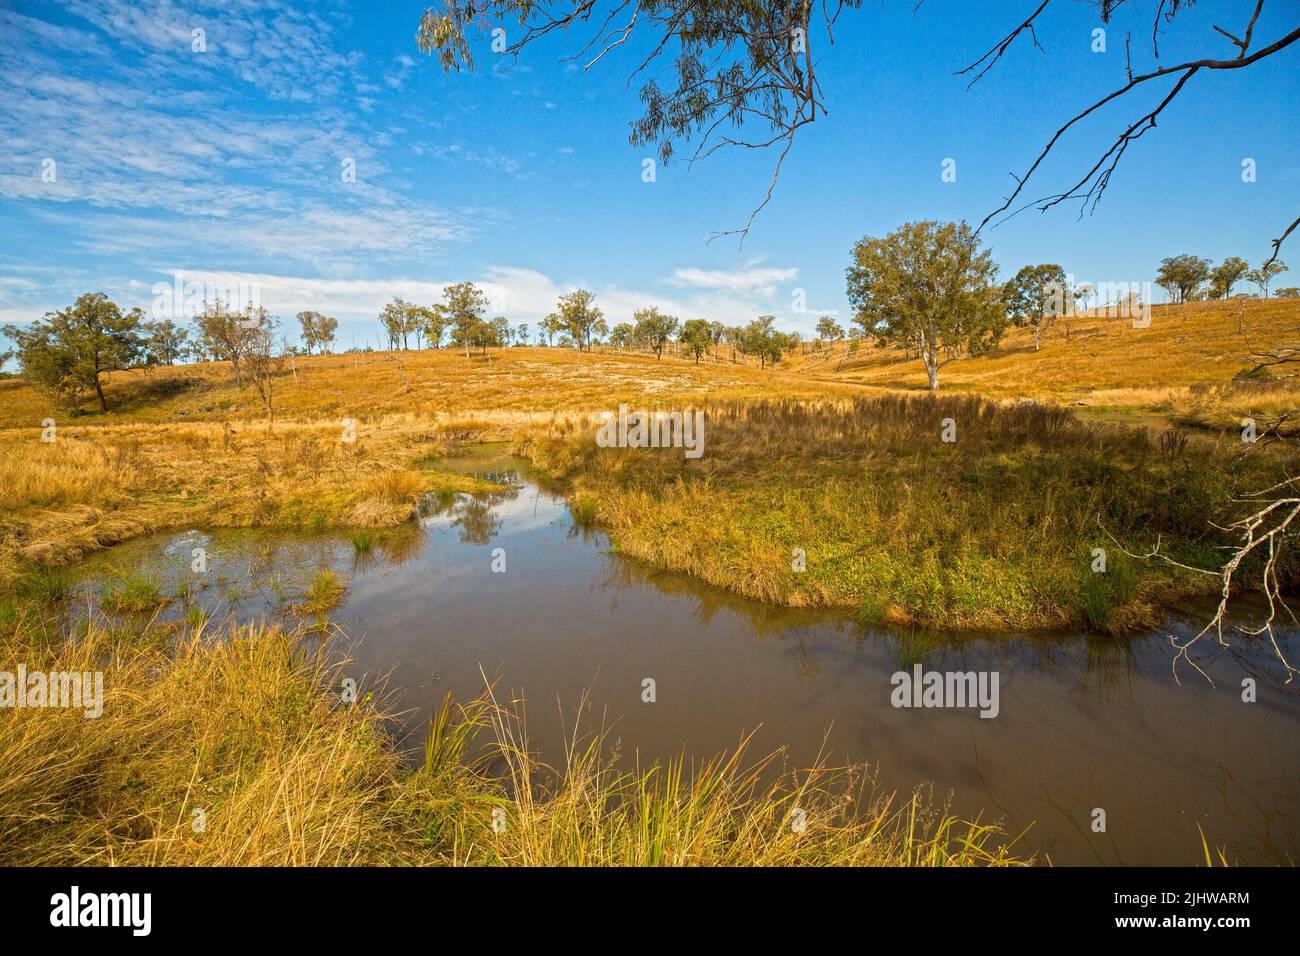 Paysage rural australien avec des herbes dorées et des gommiers épars hemming creek au pied de collines vallonnées sous le ciel bleu Banque D'Images